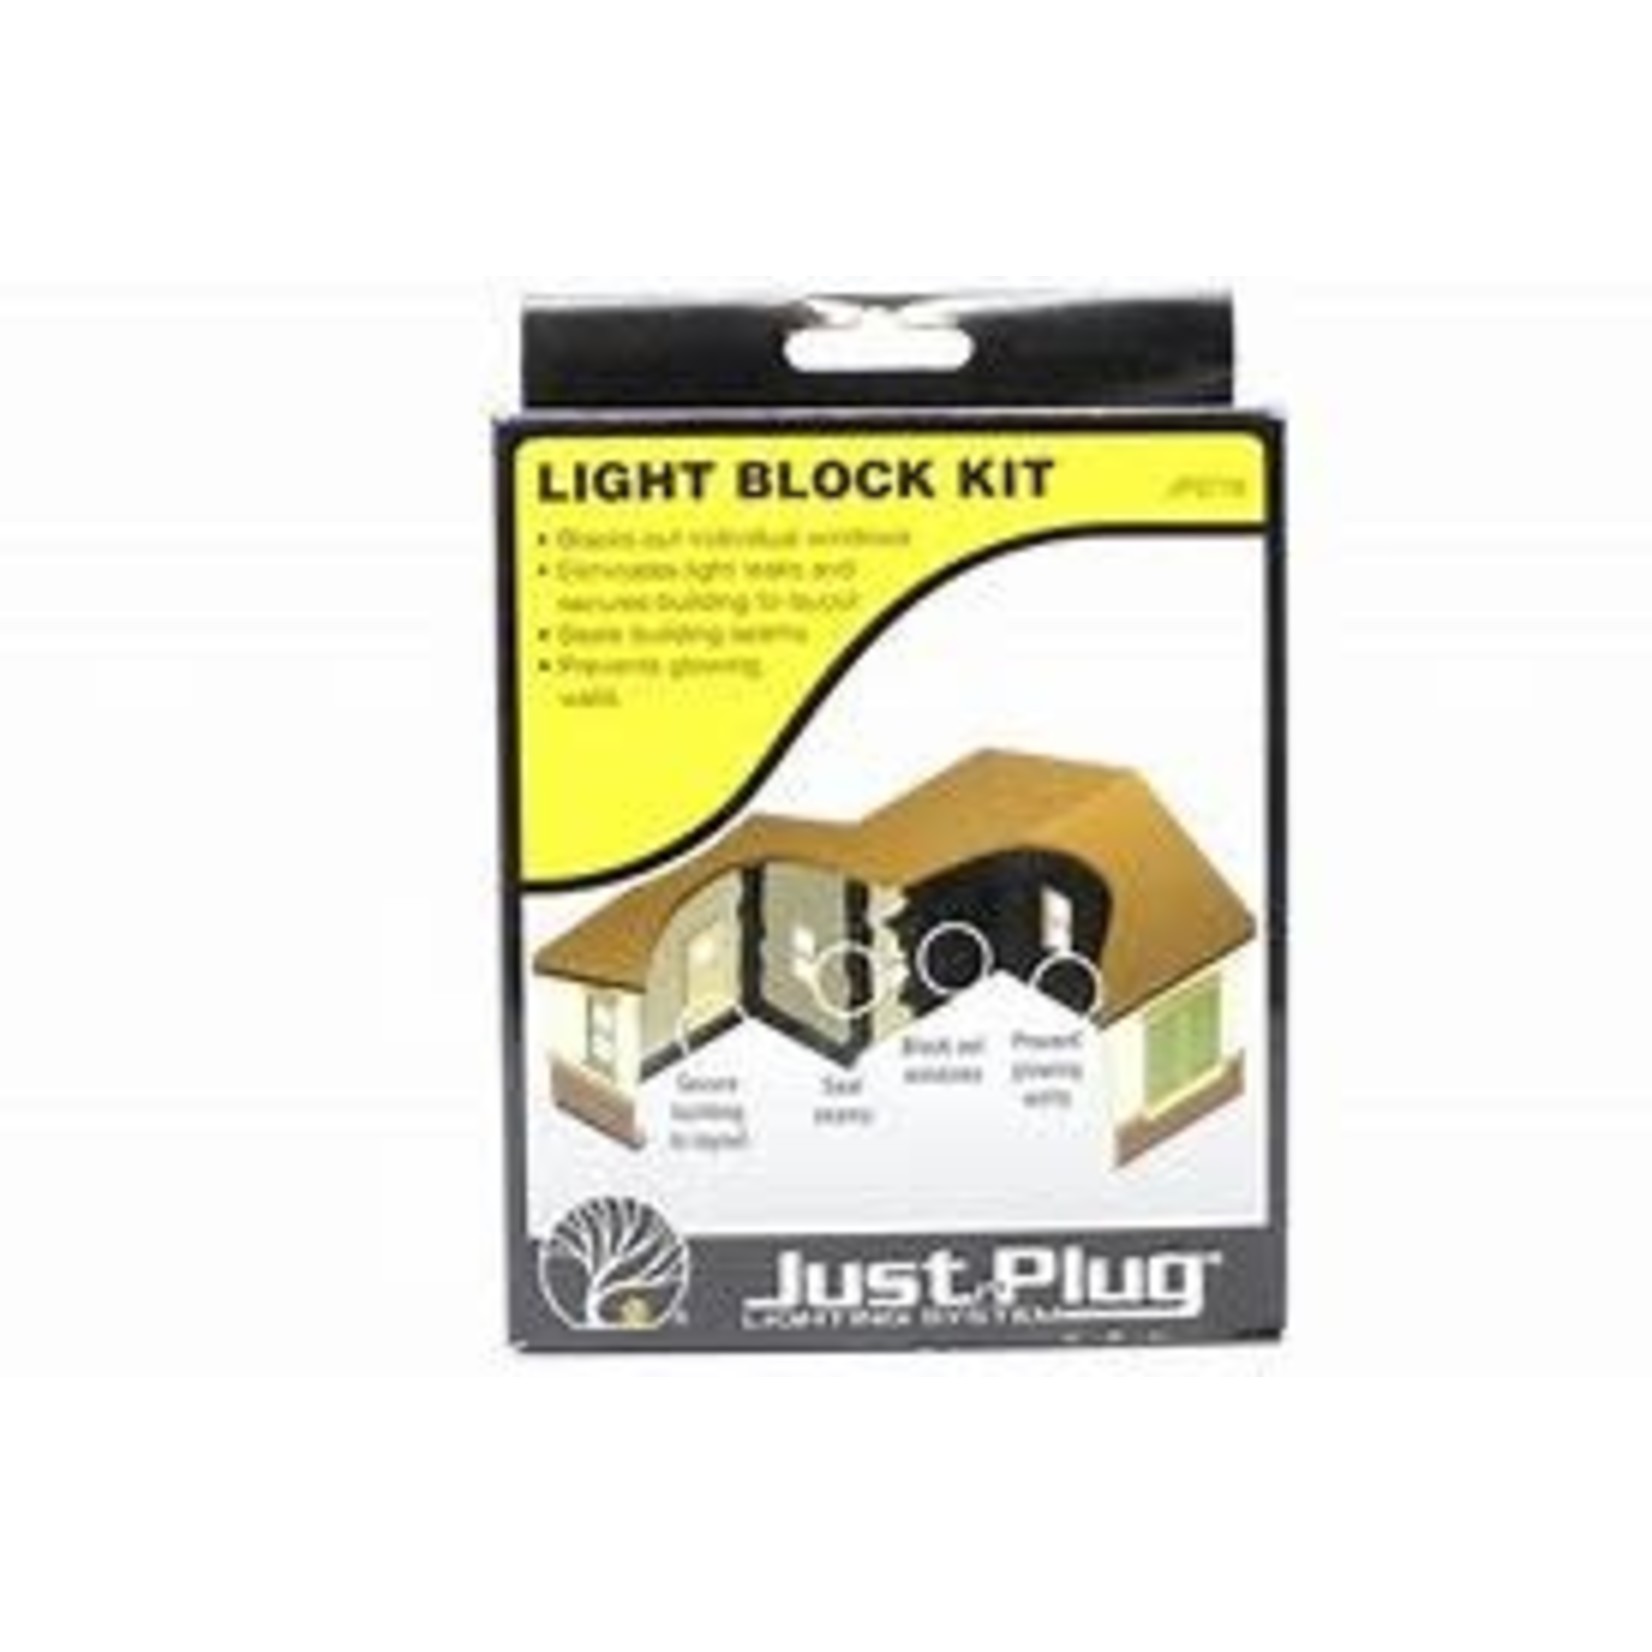 Just Plug Light Block Kit